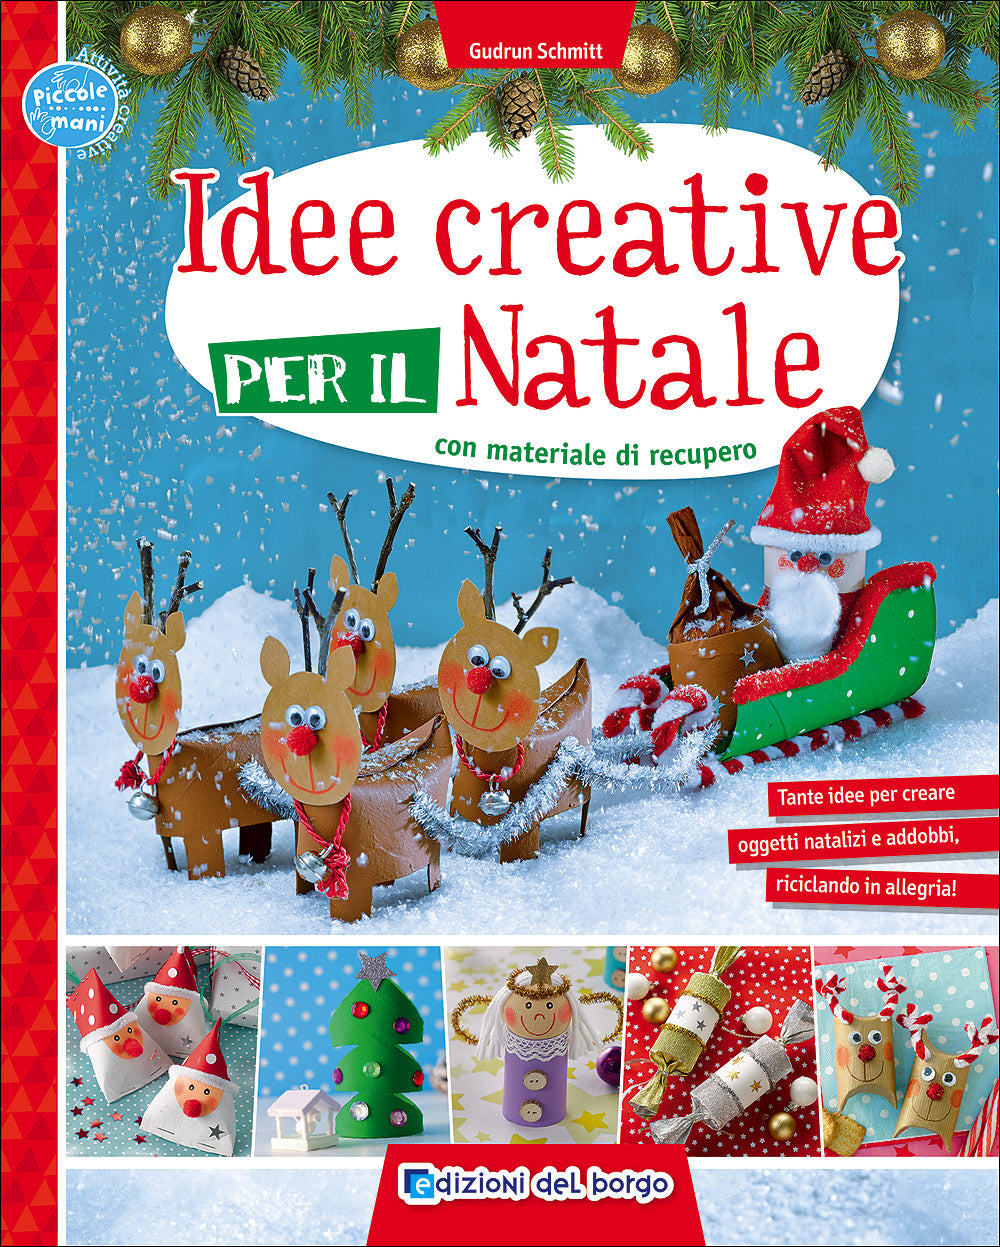 Idee creative per il Natale con materiale di recupero. Tante idee per creare oggetti natalizi e addobbi, riciclando in allegria!